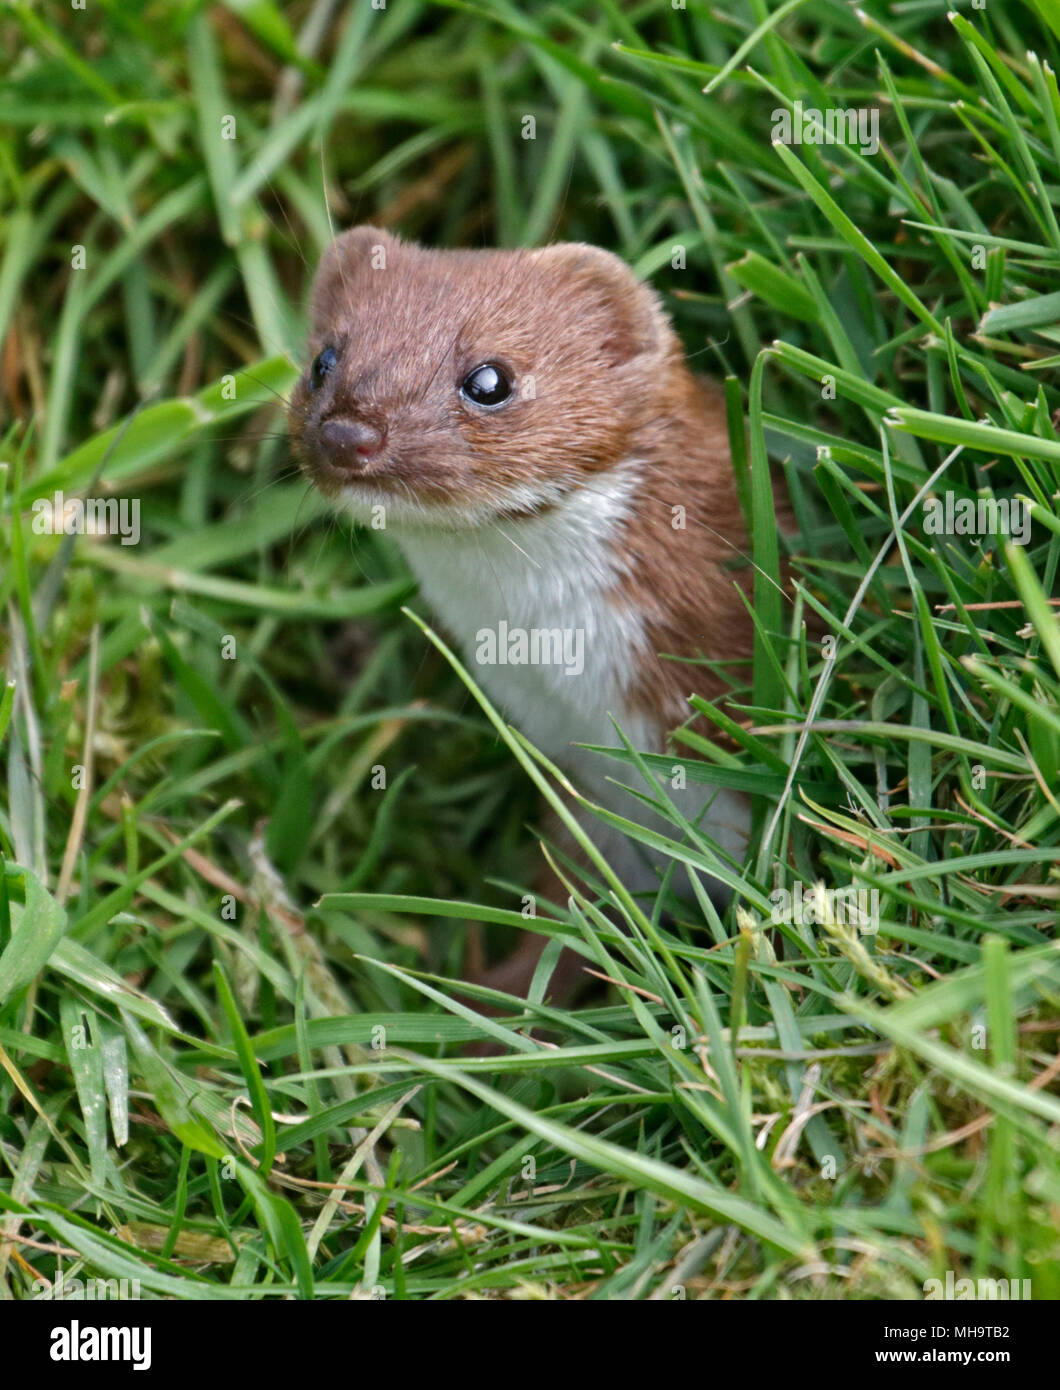 European Weasel/Least Weasel (mustela nivalis) Stock Photo